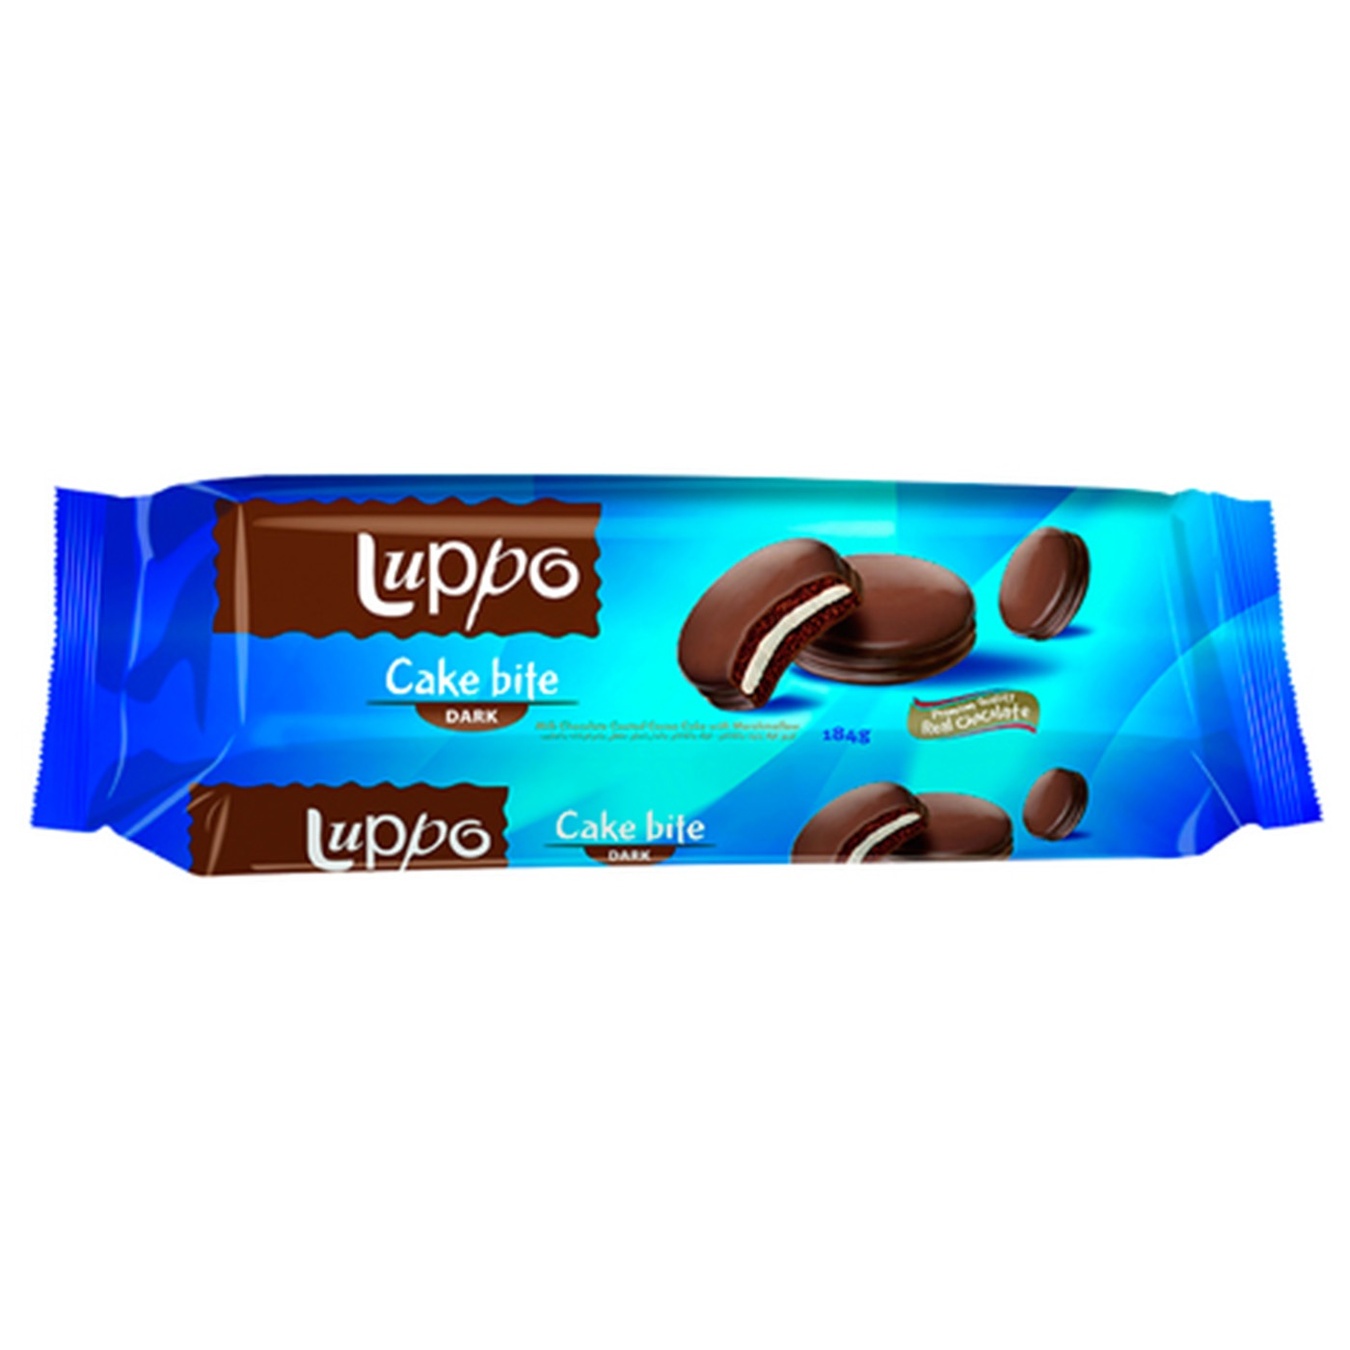 Кекс Luppo ŞÖLEN з какао і маршмеллоу в молочному шоколаді 184г